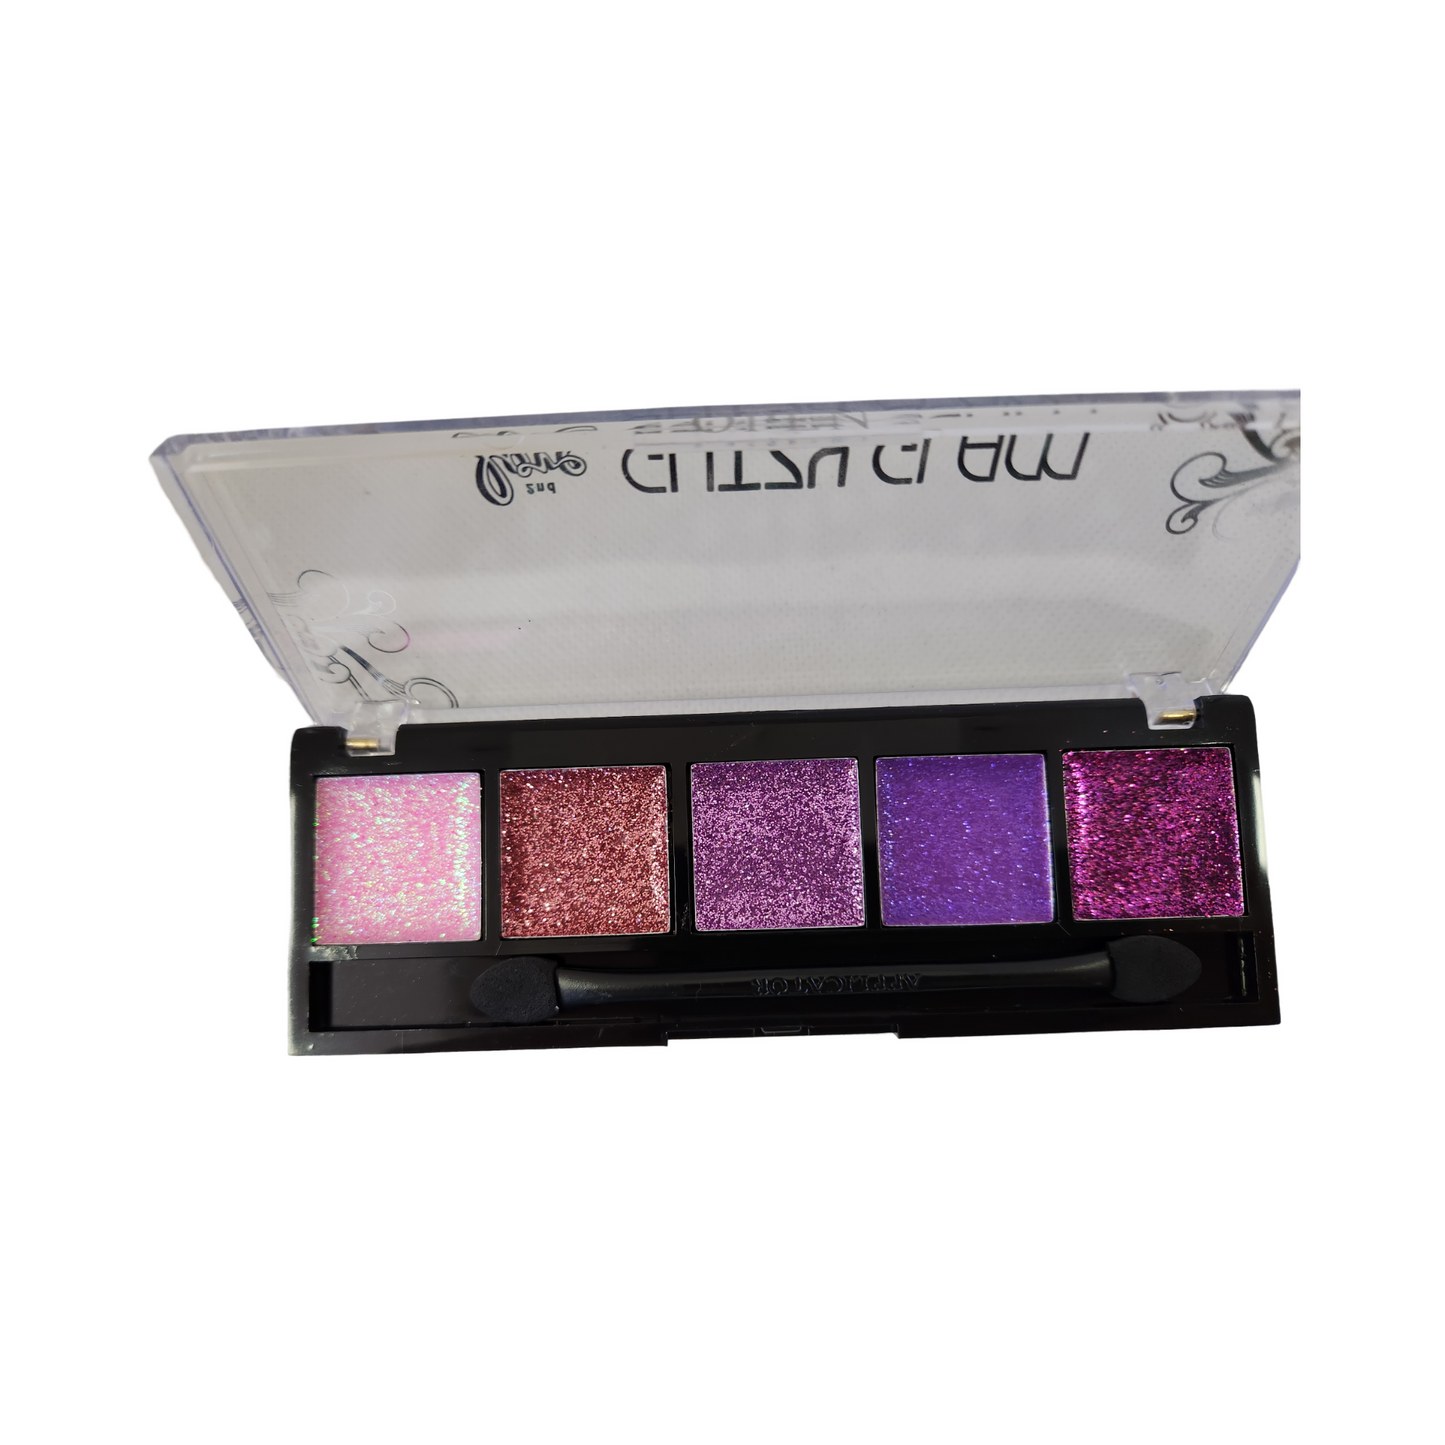 Glitzy Glam Glitter Palette|2nd Love